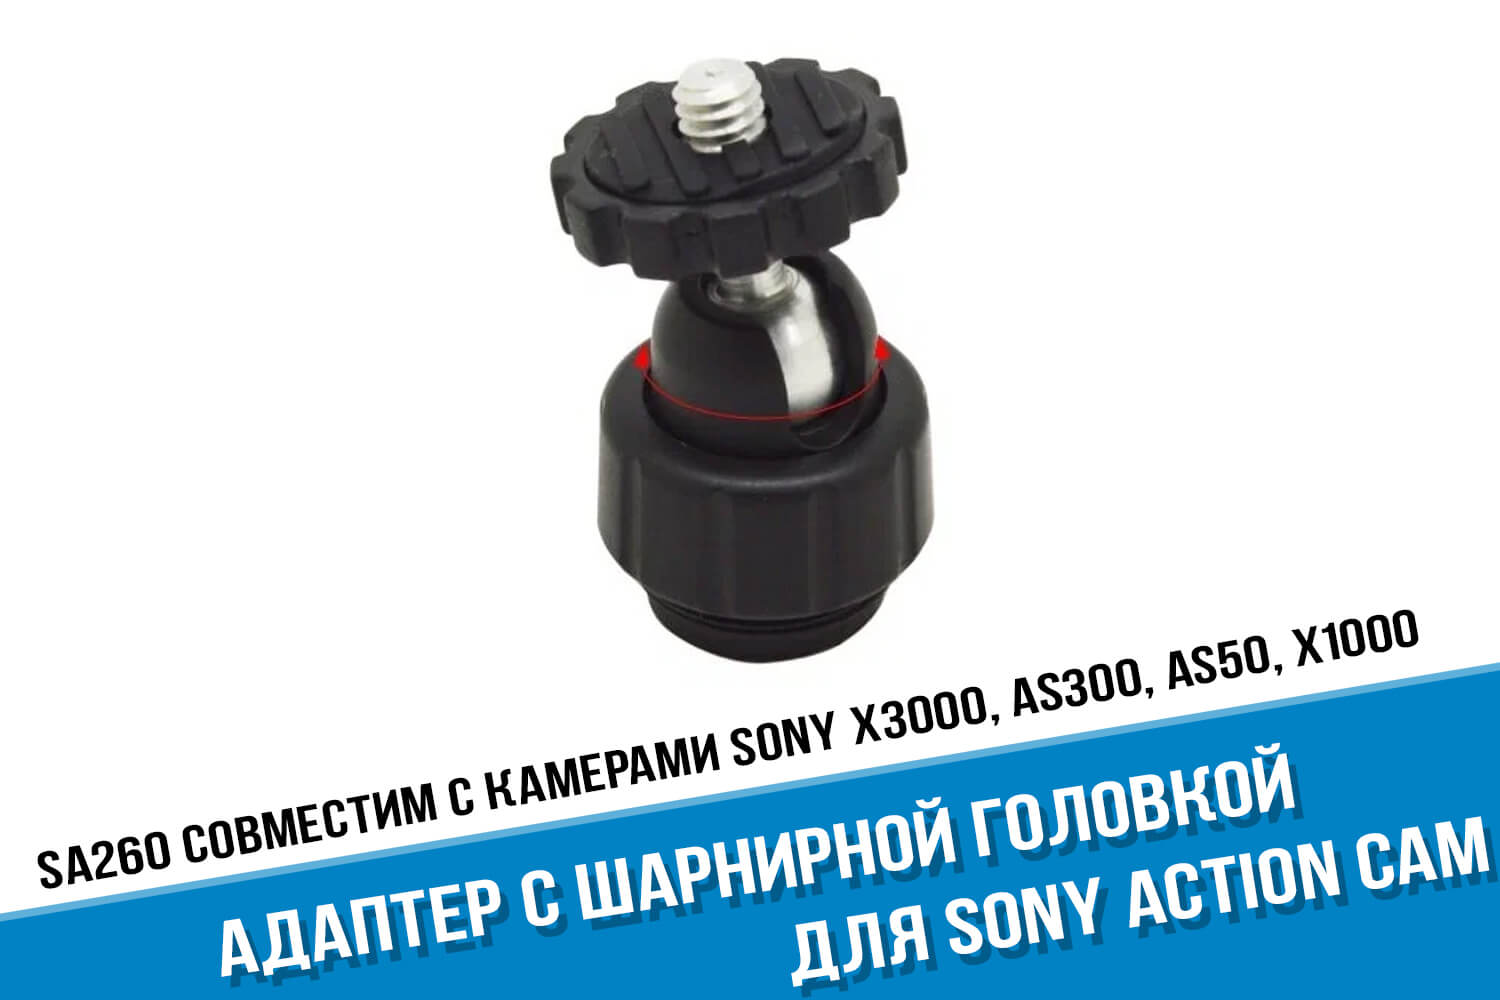 Адаптер с шарнирной головкой для экшн-камеры Sony Action Cam